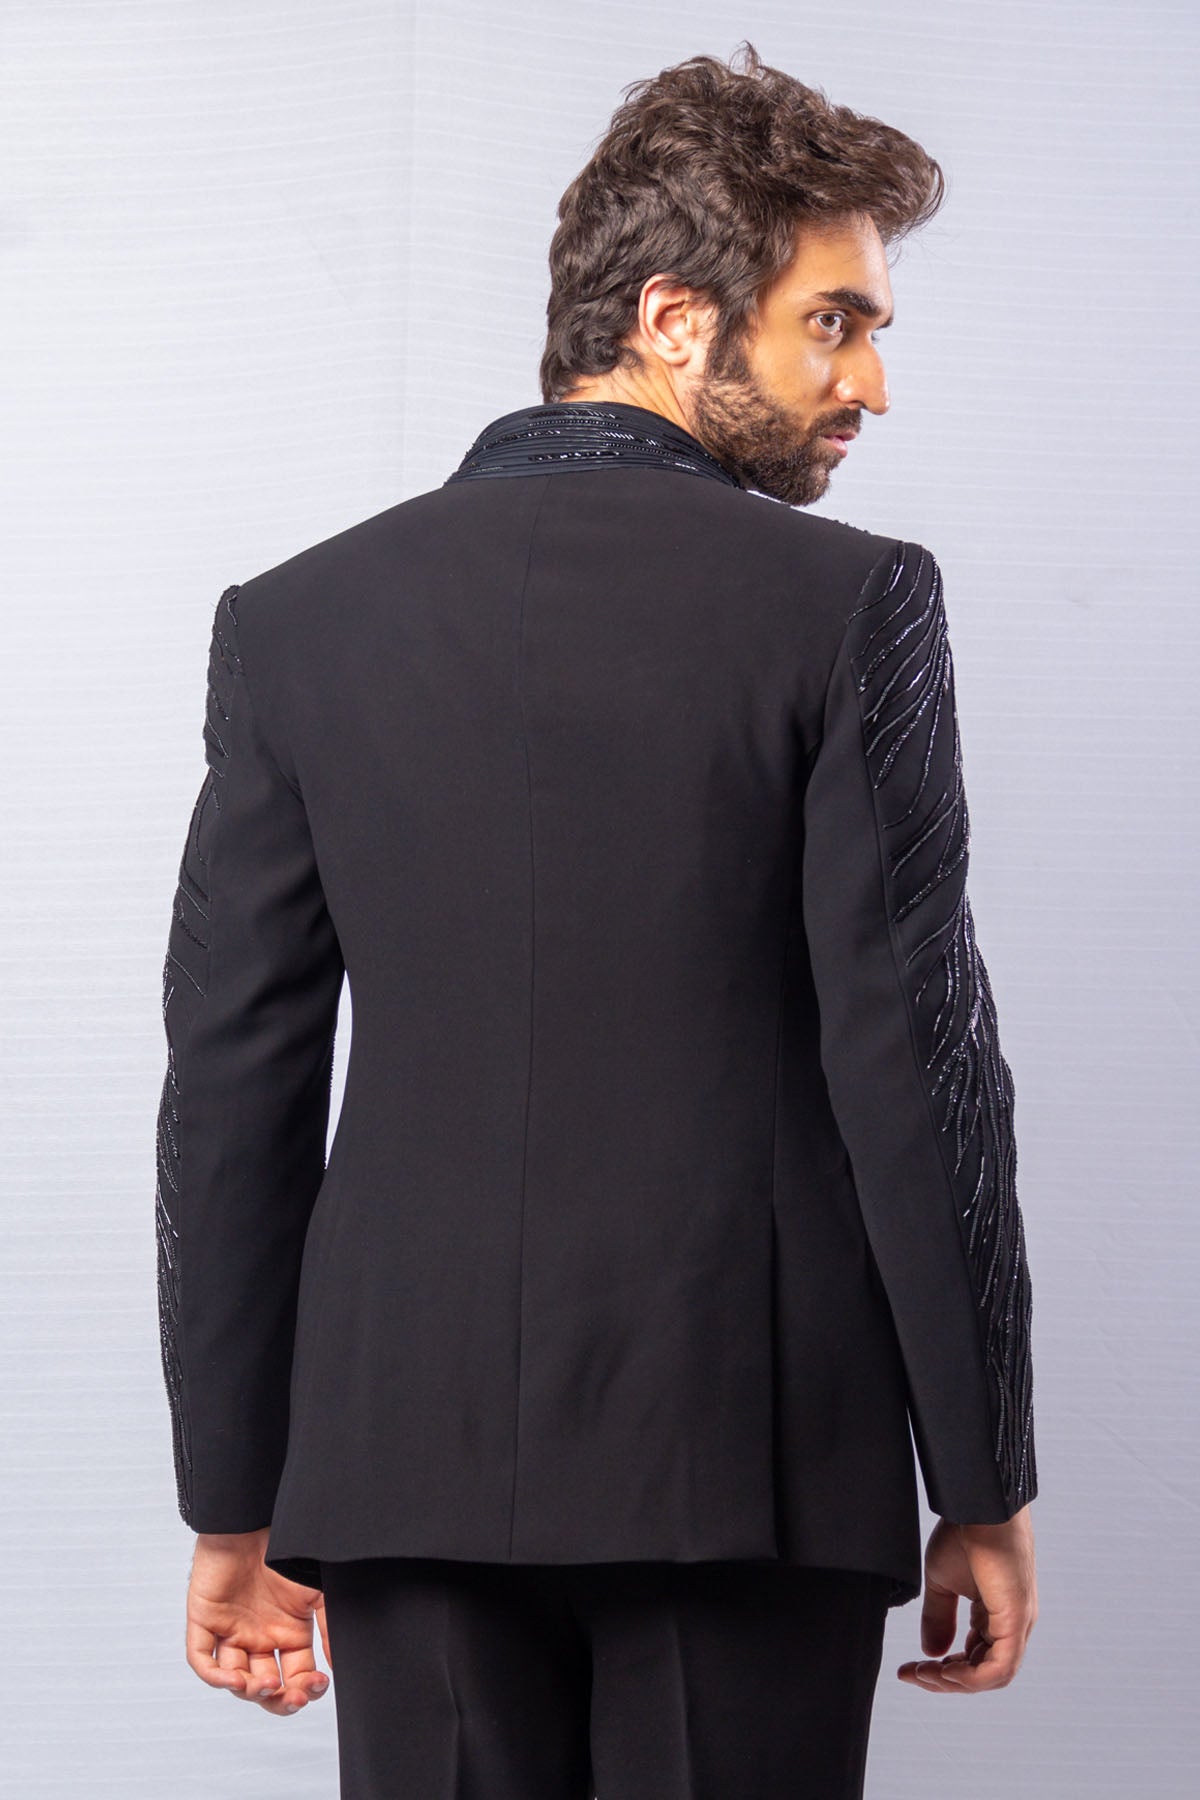 Embellished Tuxedo Suit